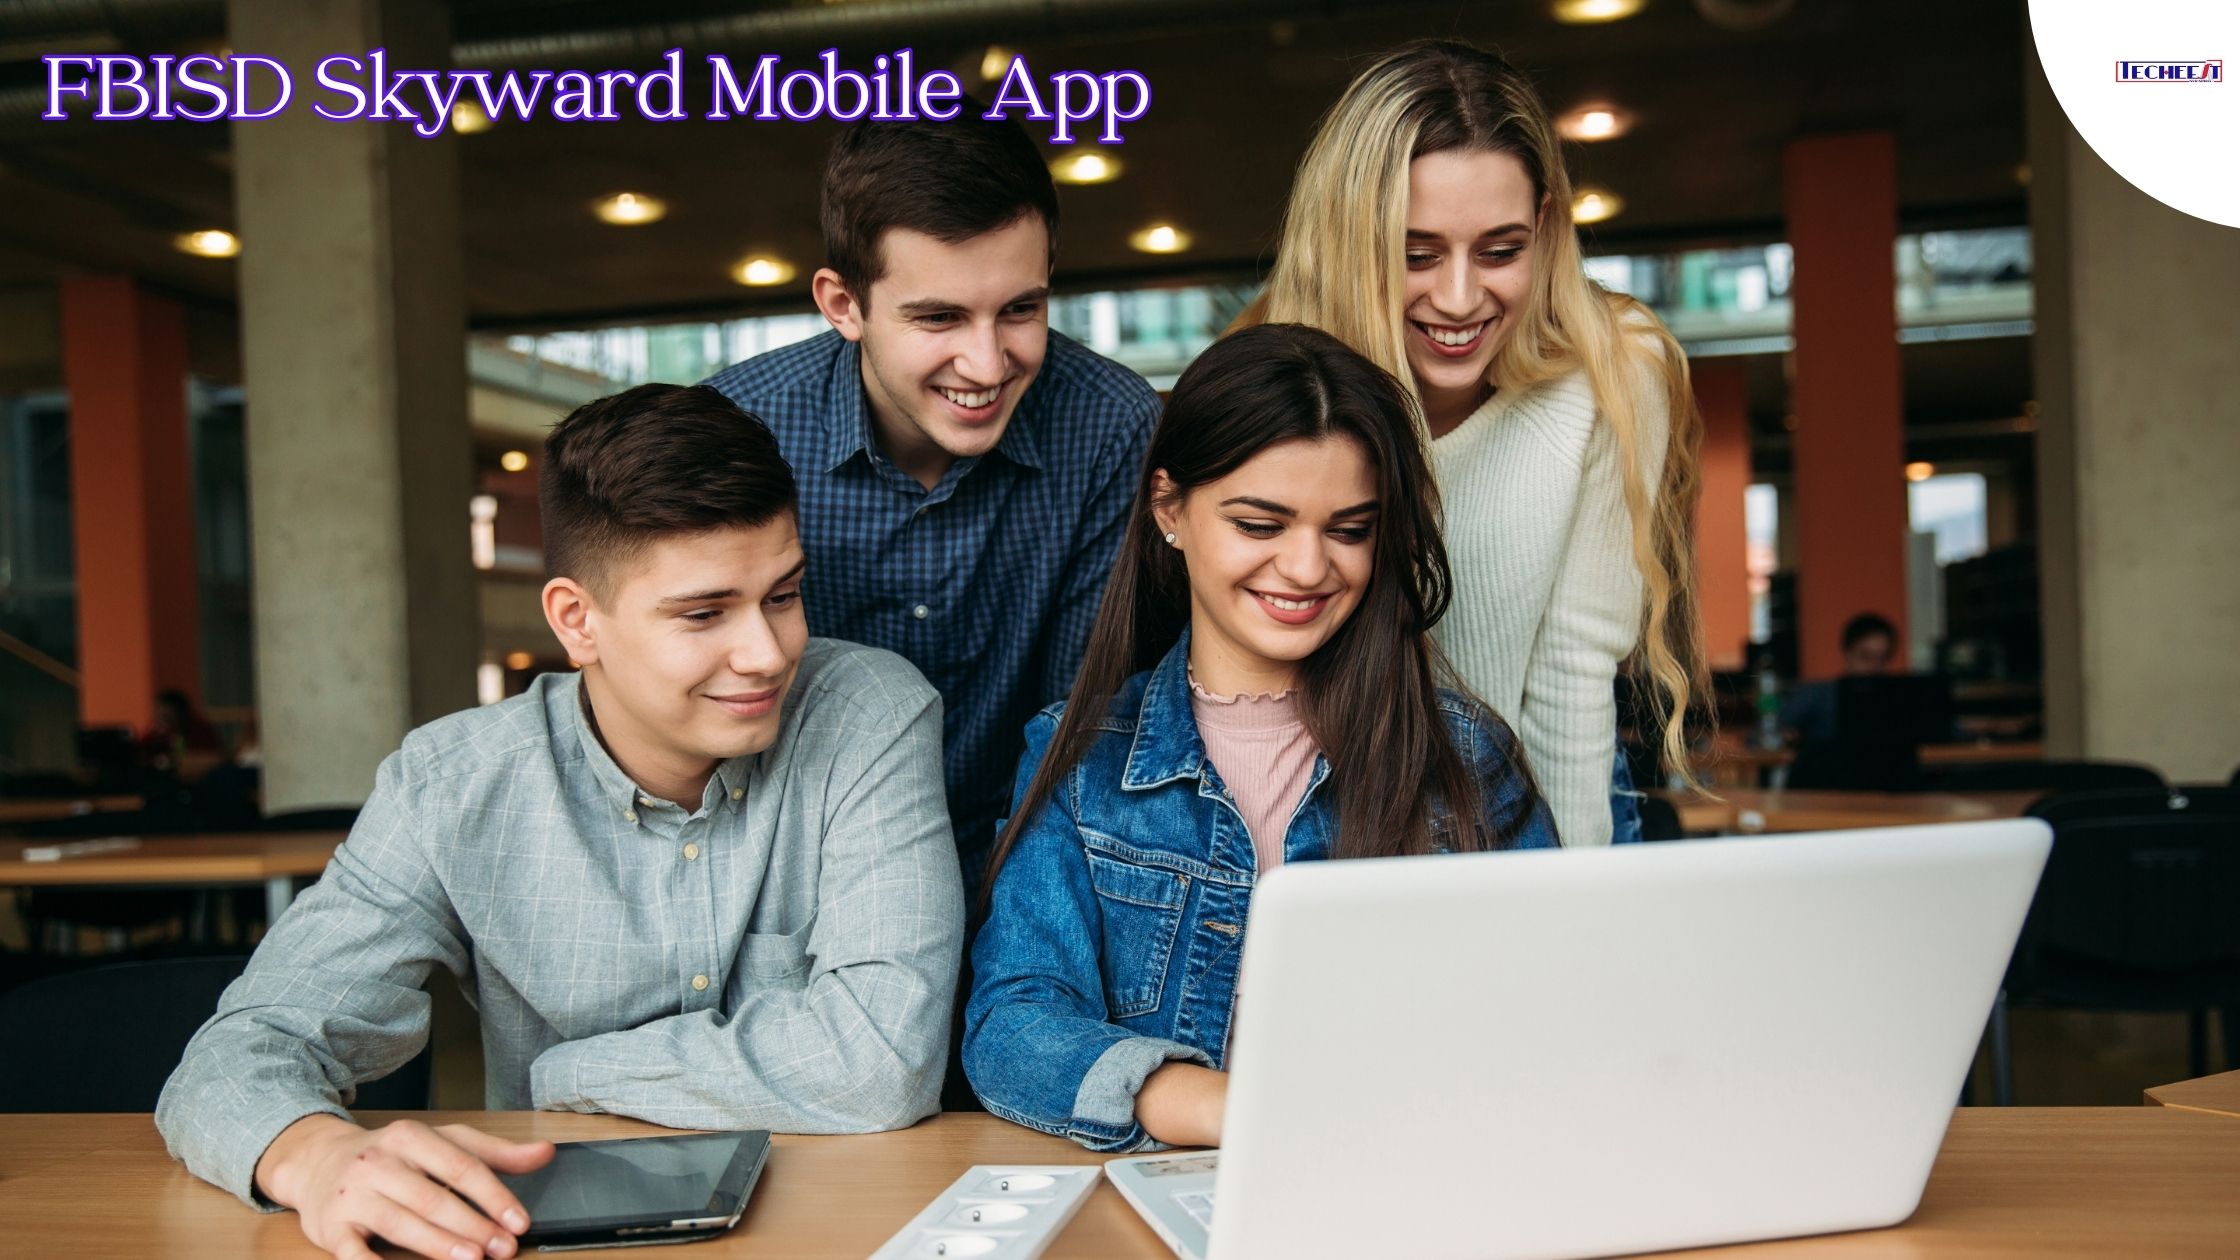 FBISD Skyward Mobile App